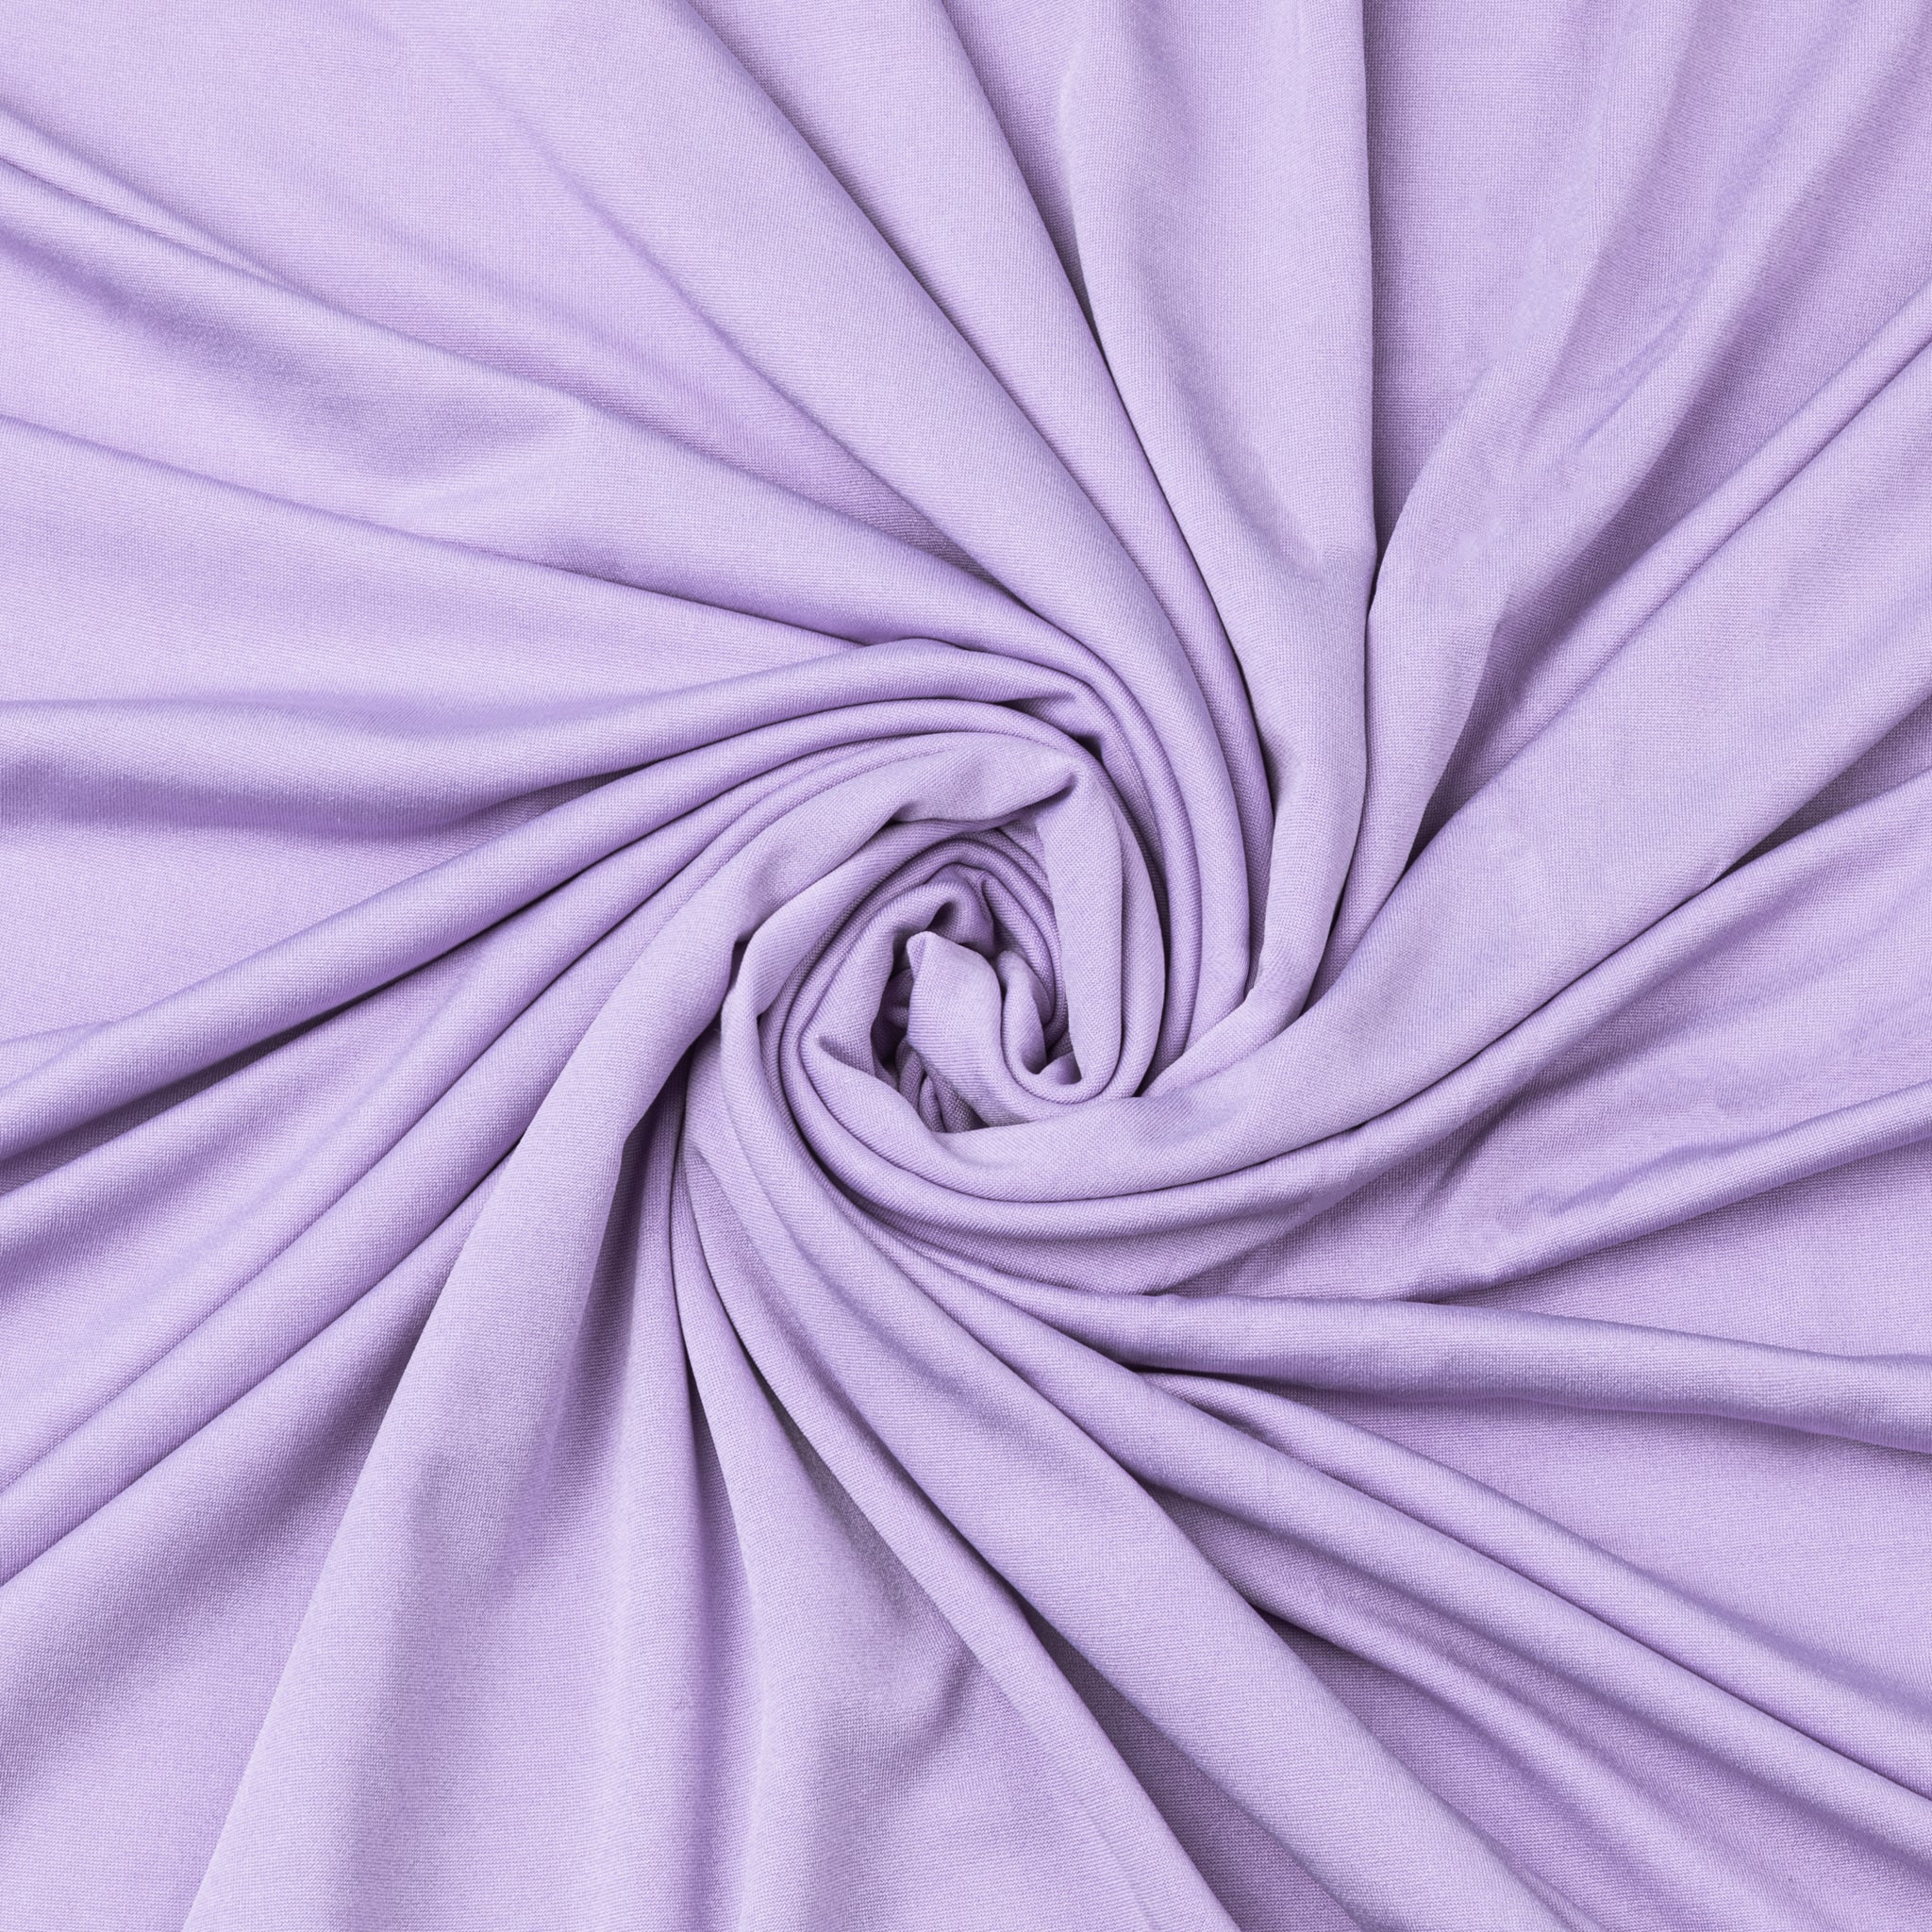 Silky 2 Way Stretch Spandex Chiffon Fabric By The Yard